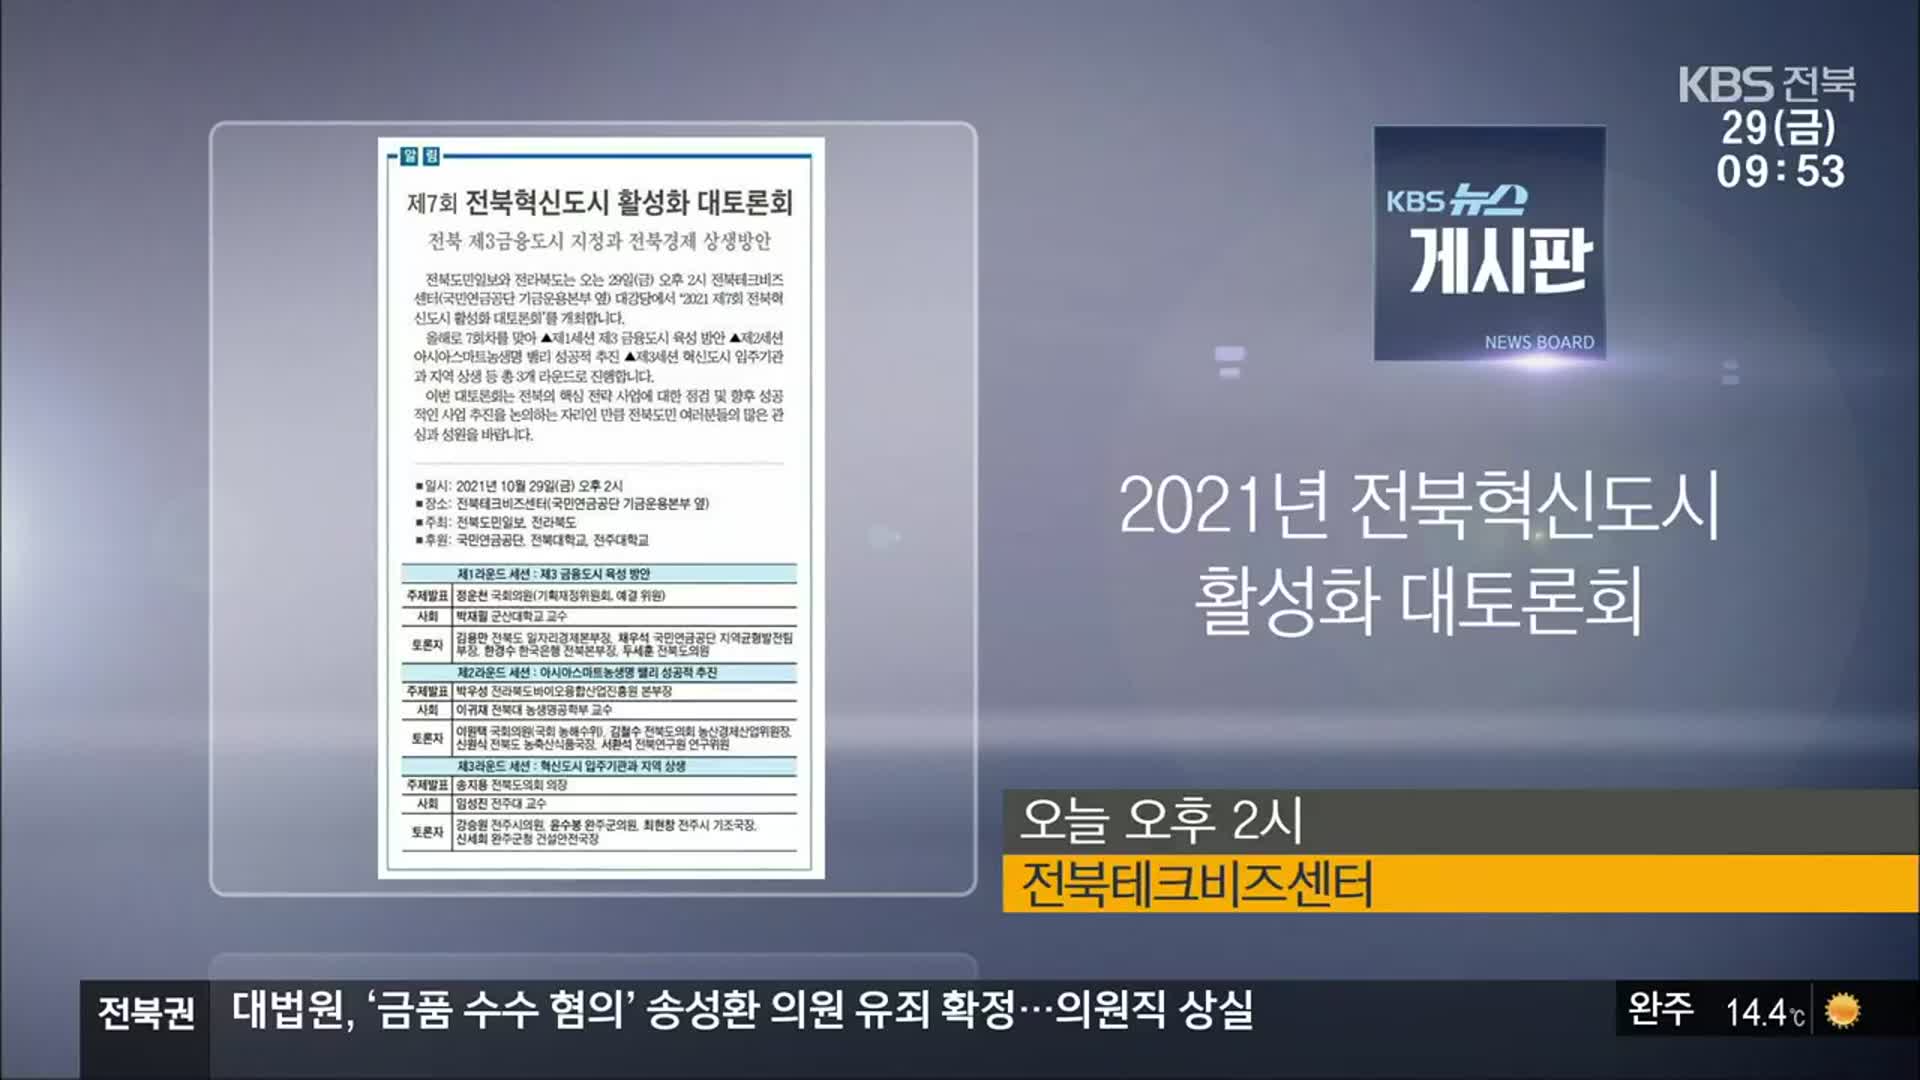 [게시판] 2021년 전북혁신도시 활성화 대토론회 외